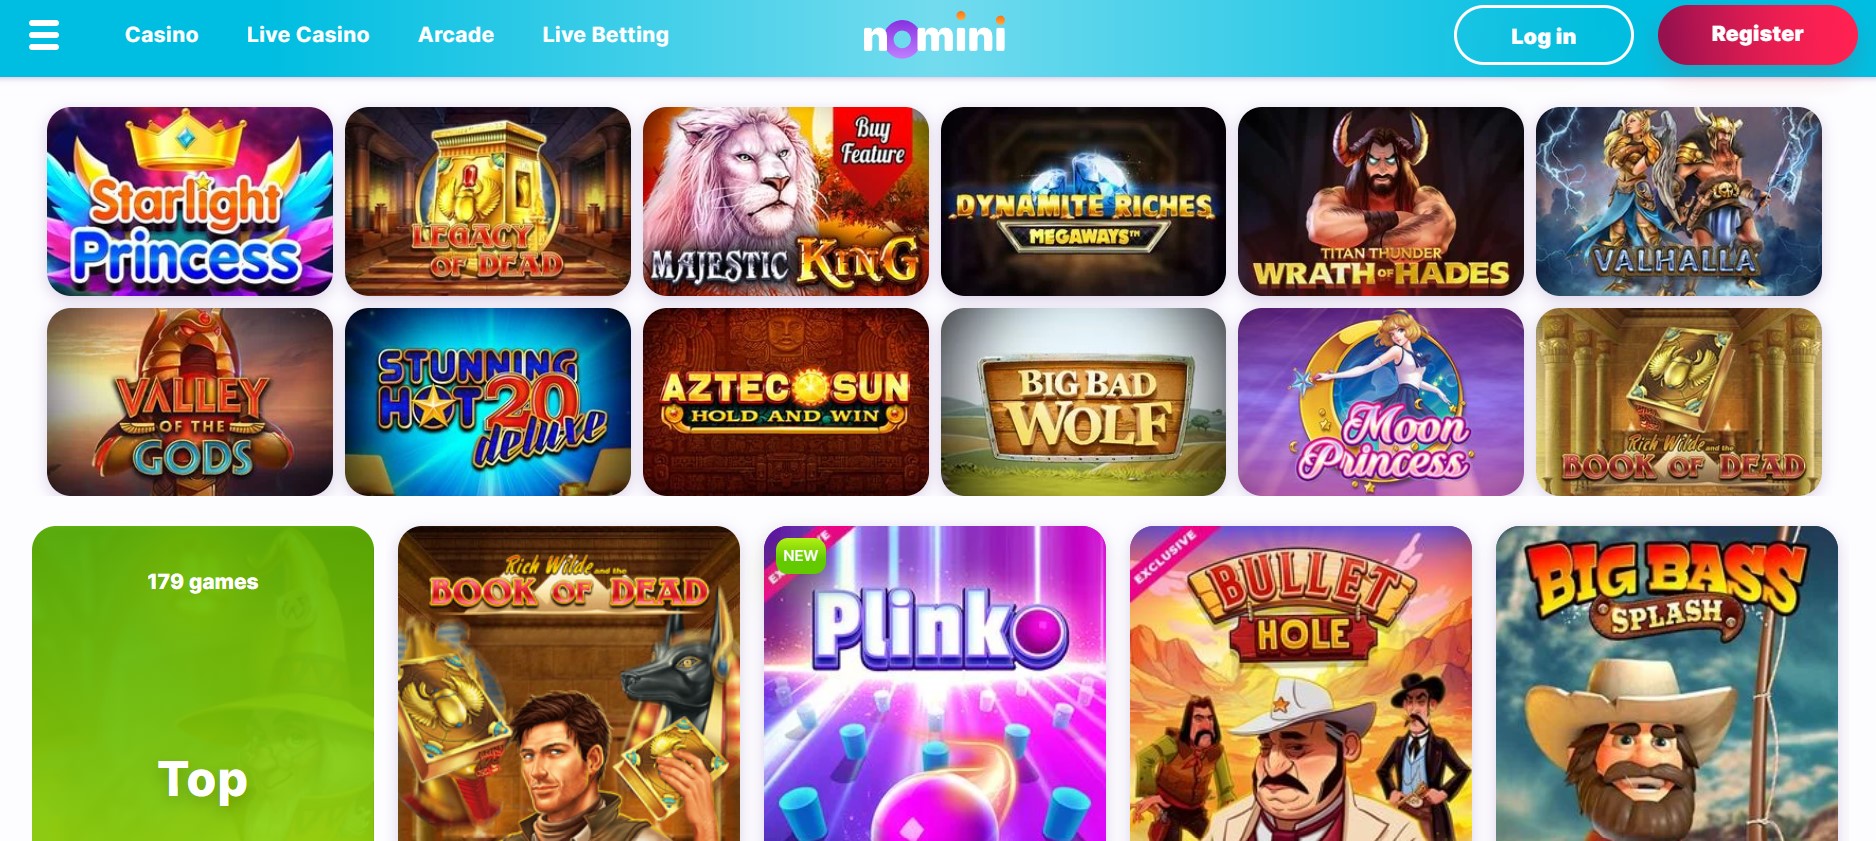 Nomini Casino games